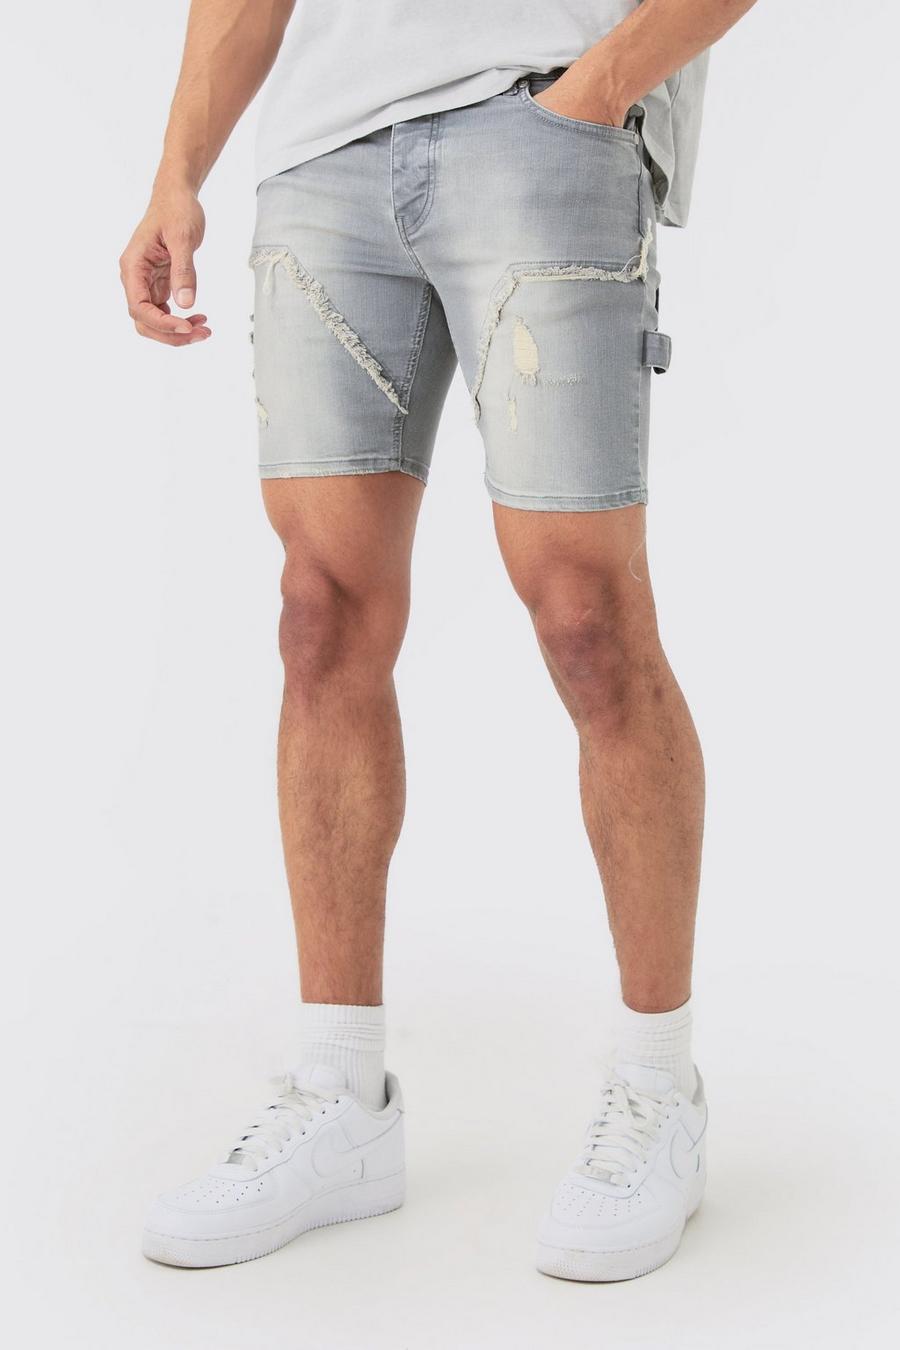 Pantaloncini in denim Skinny Fit Stretch stile Carpenter con strappi in grigio antico, Grey